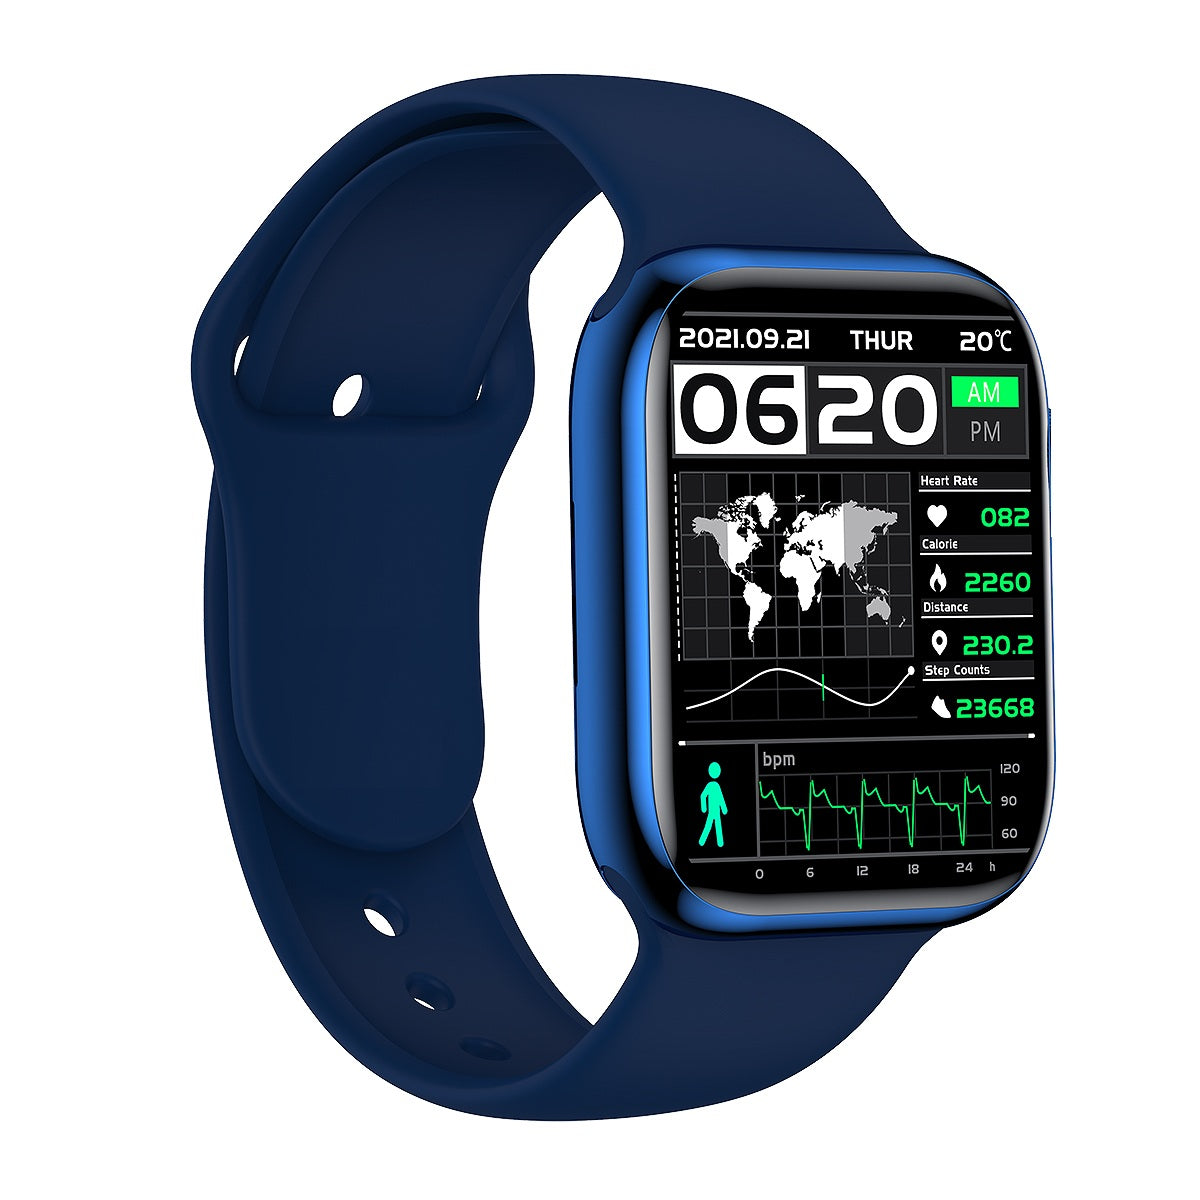 Smart Watch High Resolution Waterproof Sport Pedometer Fitness Smart Watch with Calling Feature - MackTechBiz